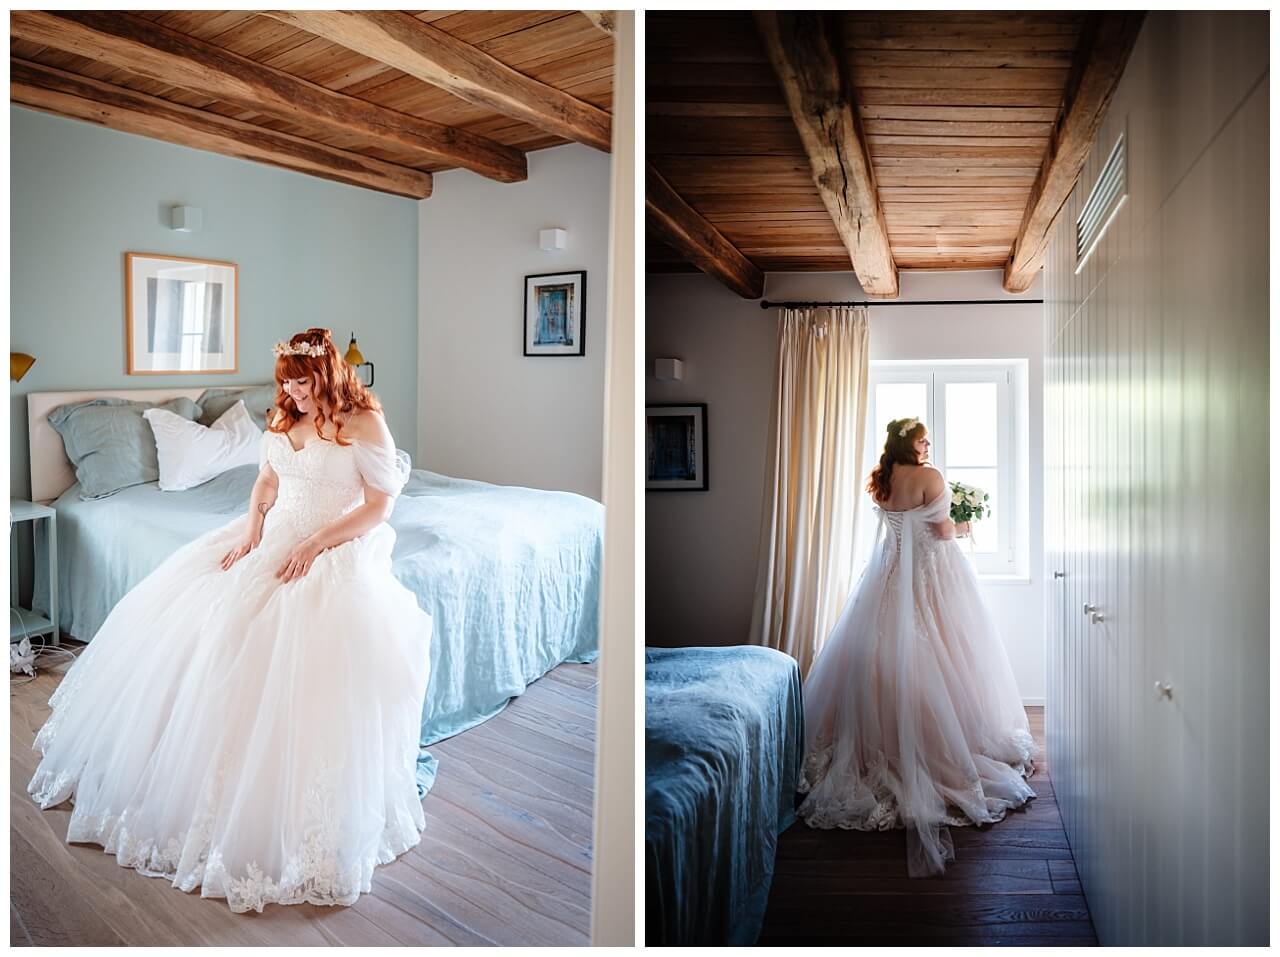 Braut getting ready für ihre Hochzeit am Meer in Kroatien